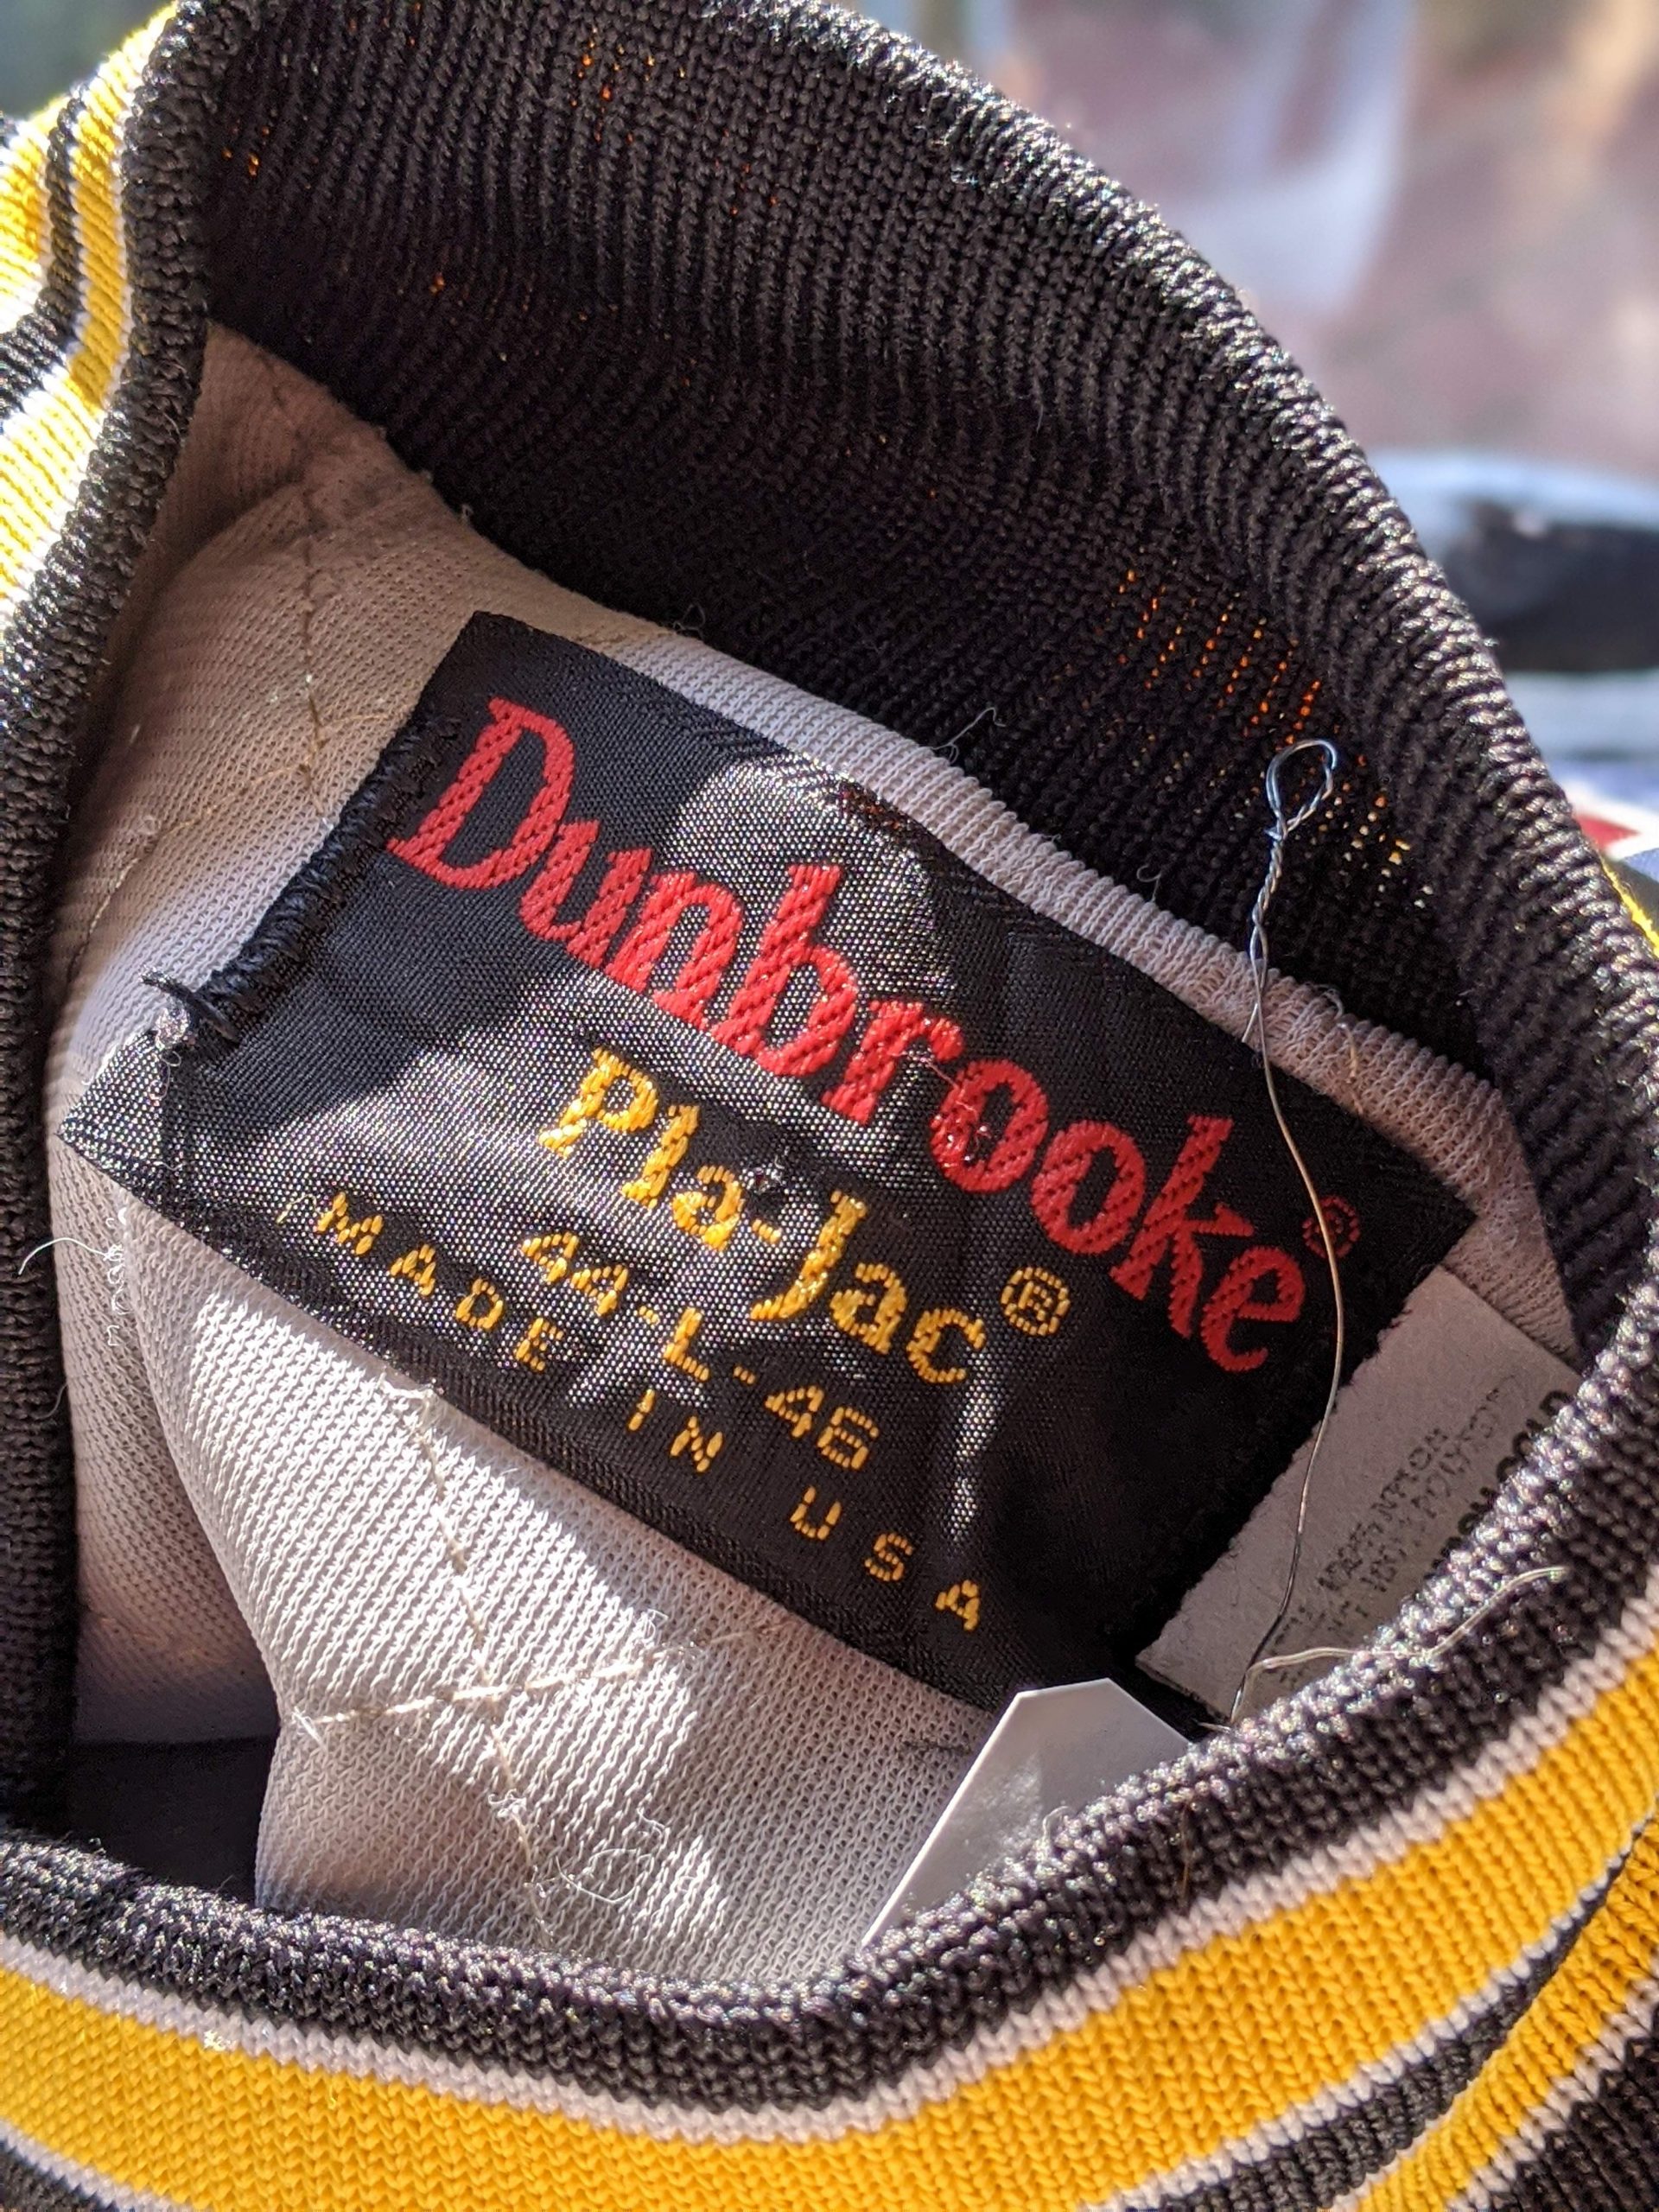 70s-80s USA Dunbrooke Pla-Jac Nylon Jacket – ataco garage blog